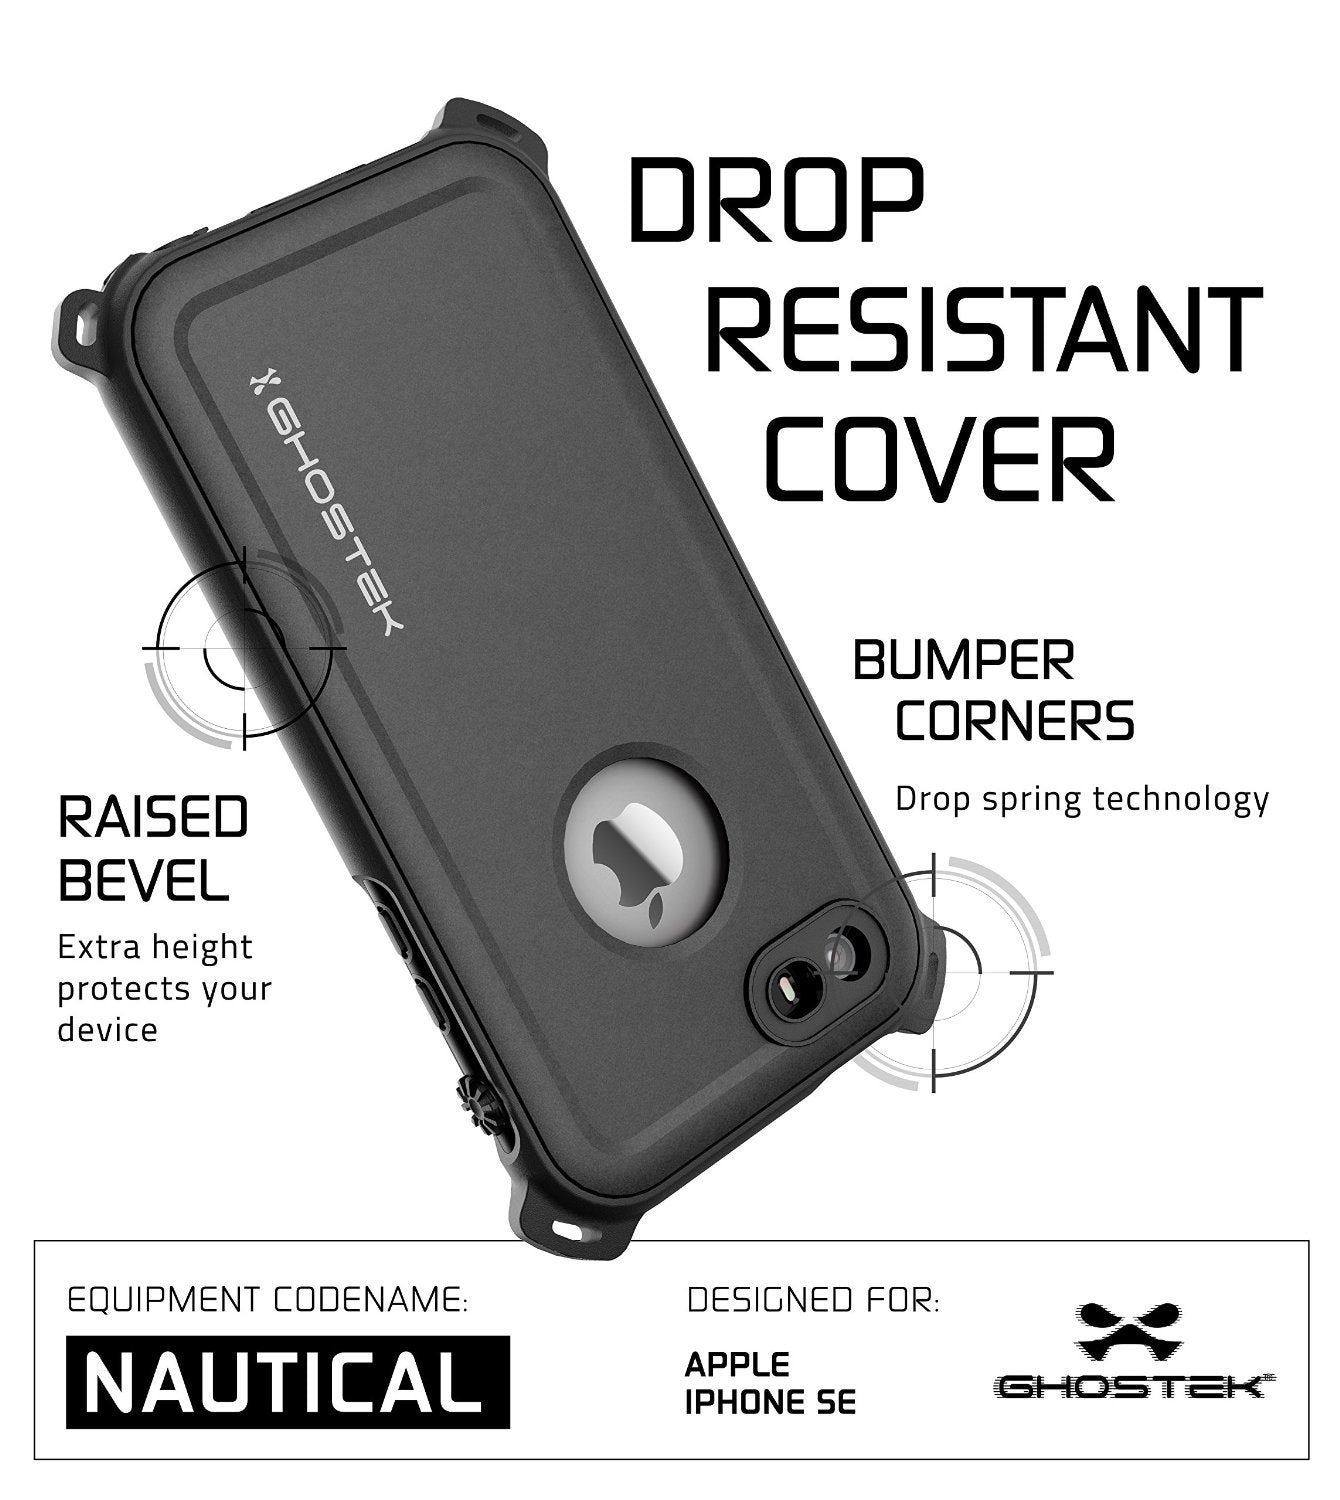 iPhone SE/5S/5 Waterproof Case, Ghostek® Nautical Black Series| Underwater | Aluminum Frame